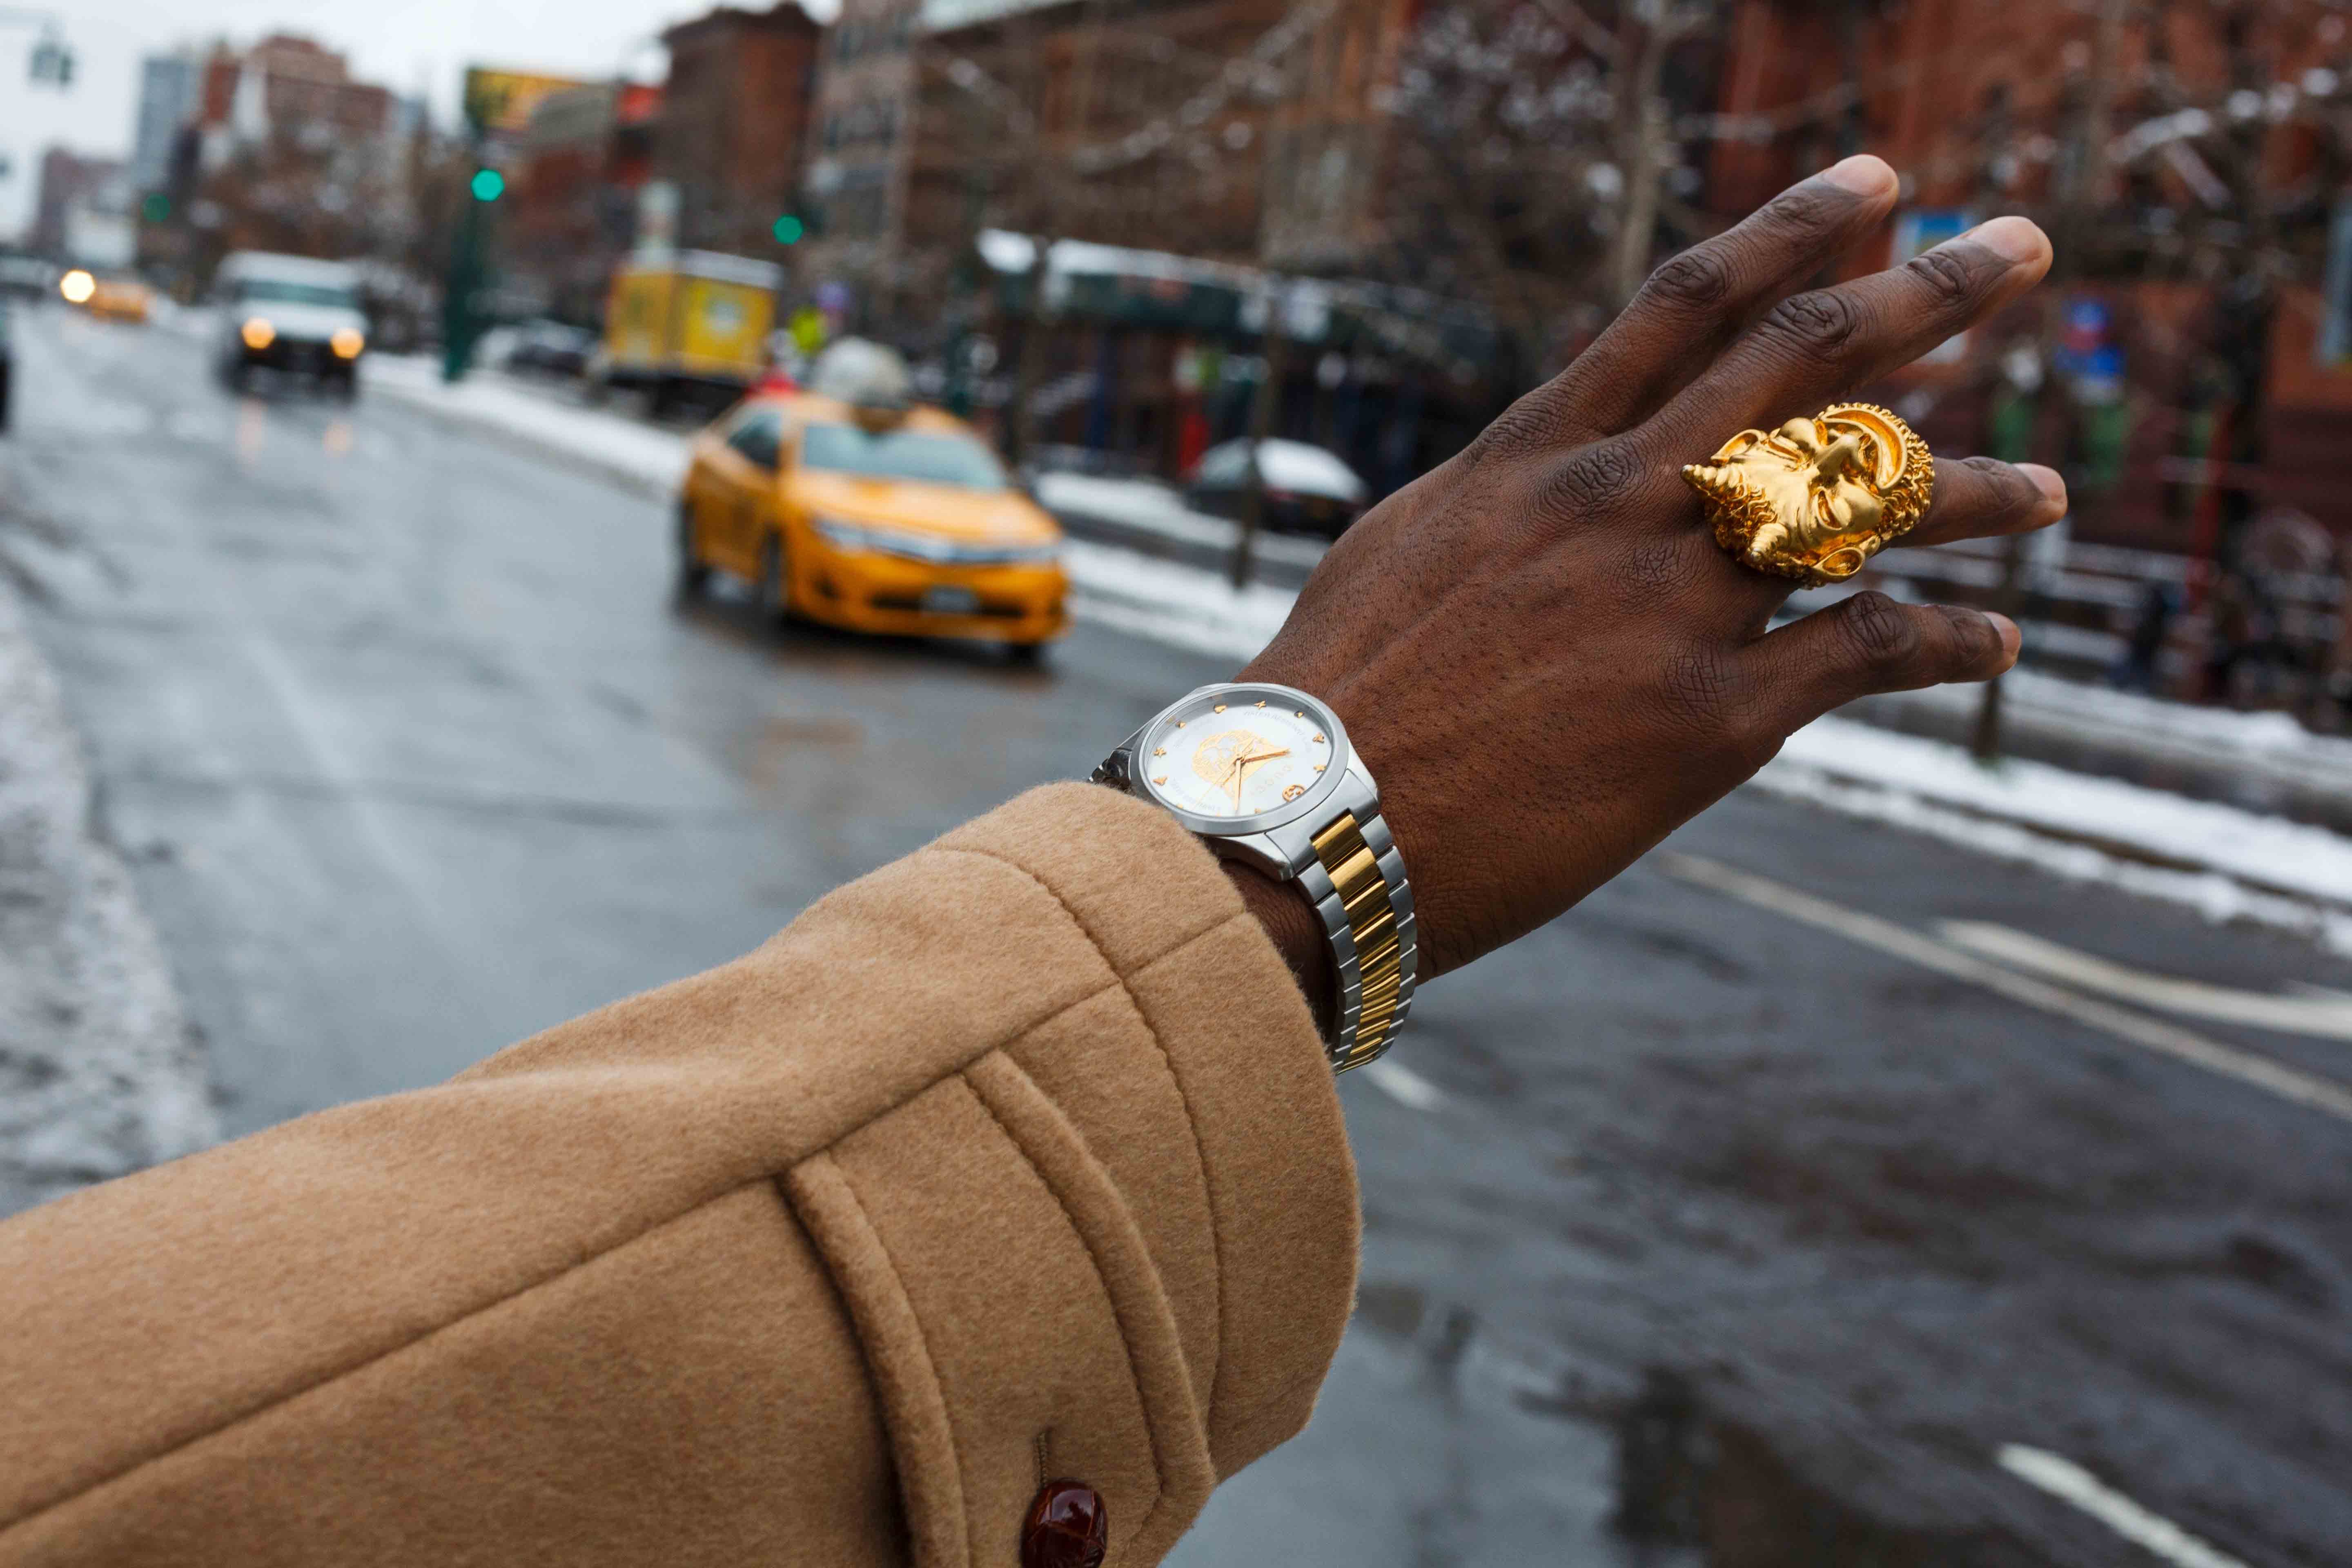 Visuel de la nouvelle campagne de Gucci, #TimeToParr photographiée par Martin Parr. À Harlem vers l’Atelier Dapper Dan.